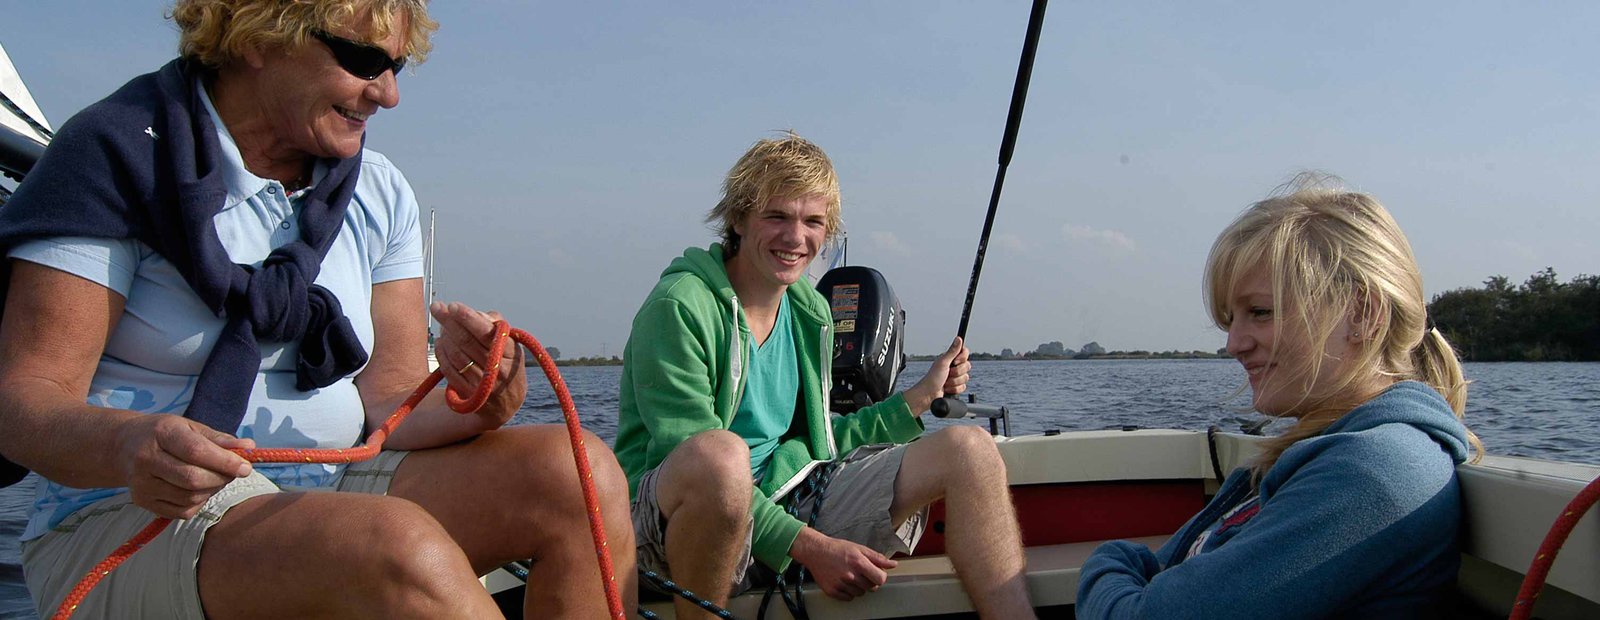 Valk huren friesland bootverhuur met zeilles en zeilen op het sneekermeer